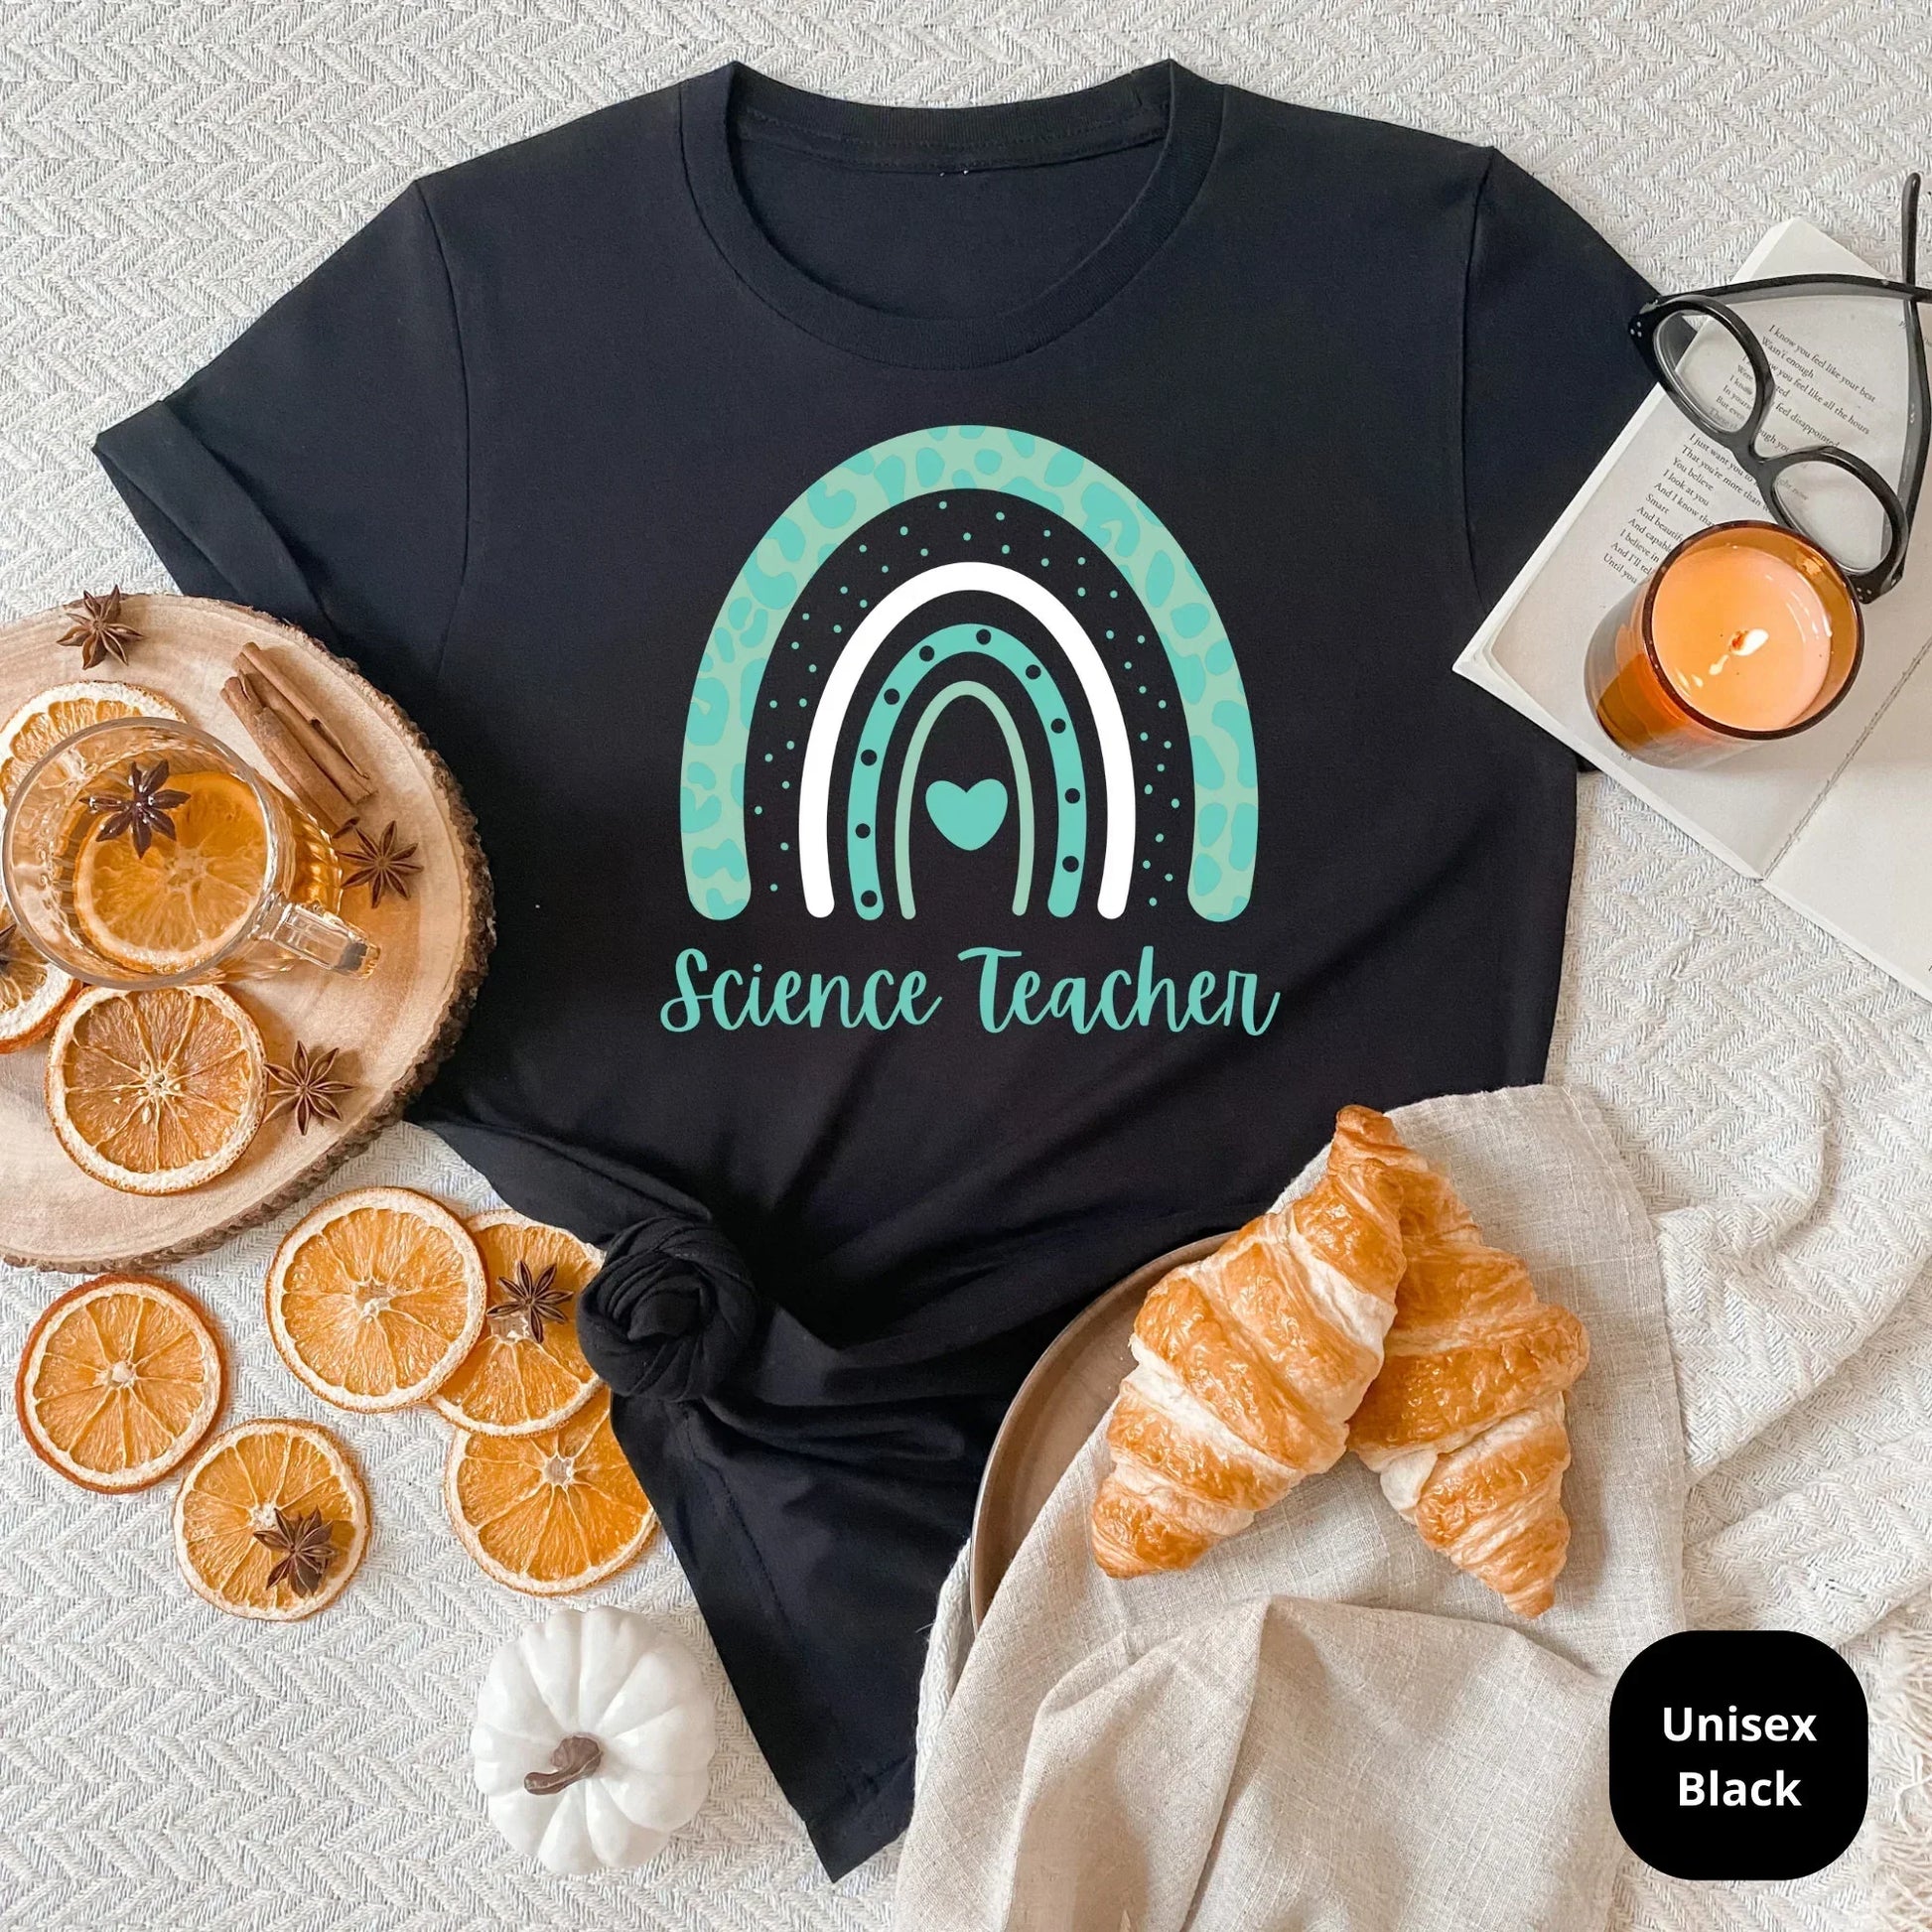 Science Teacher Shirt, Teacher Appreciation Gift, Elementary School Teacher Shirt, High School Teacher Sweatshirt Back to School Sweatshirt HMDesignStudioUS